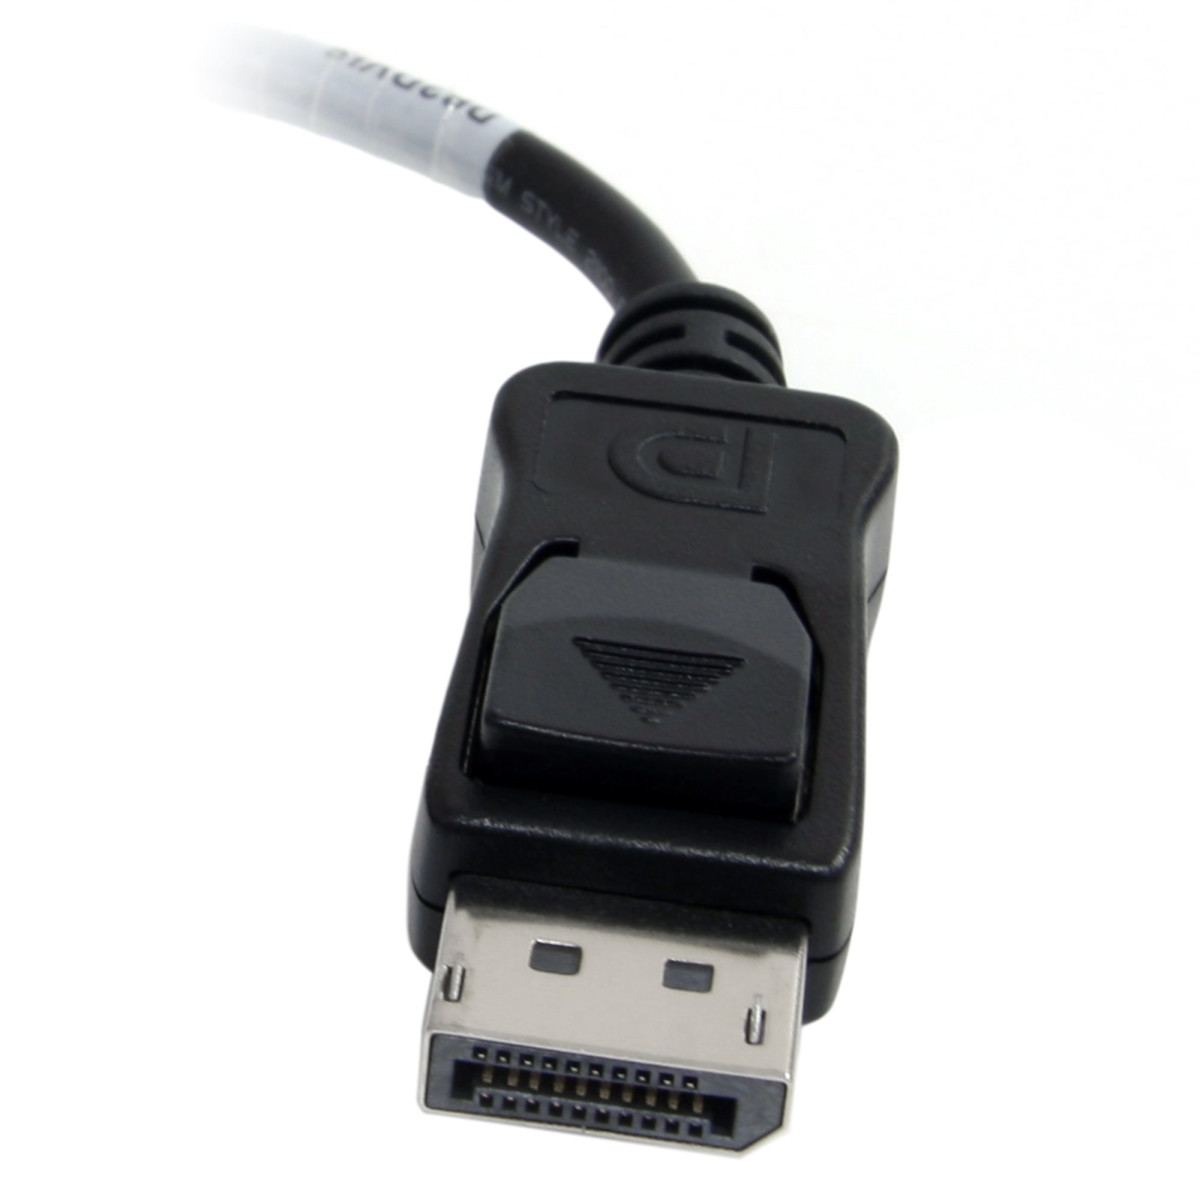 DisplayPort to DVI Active Adapter